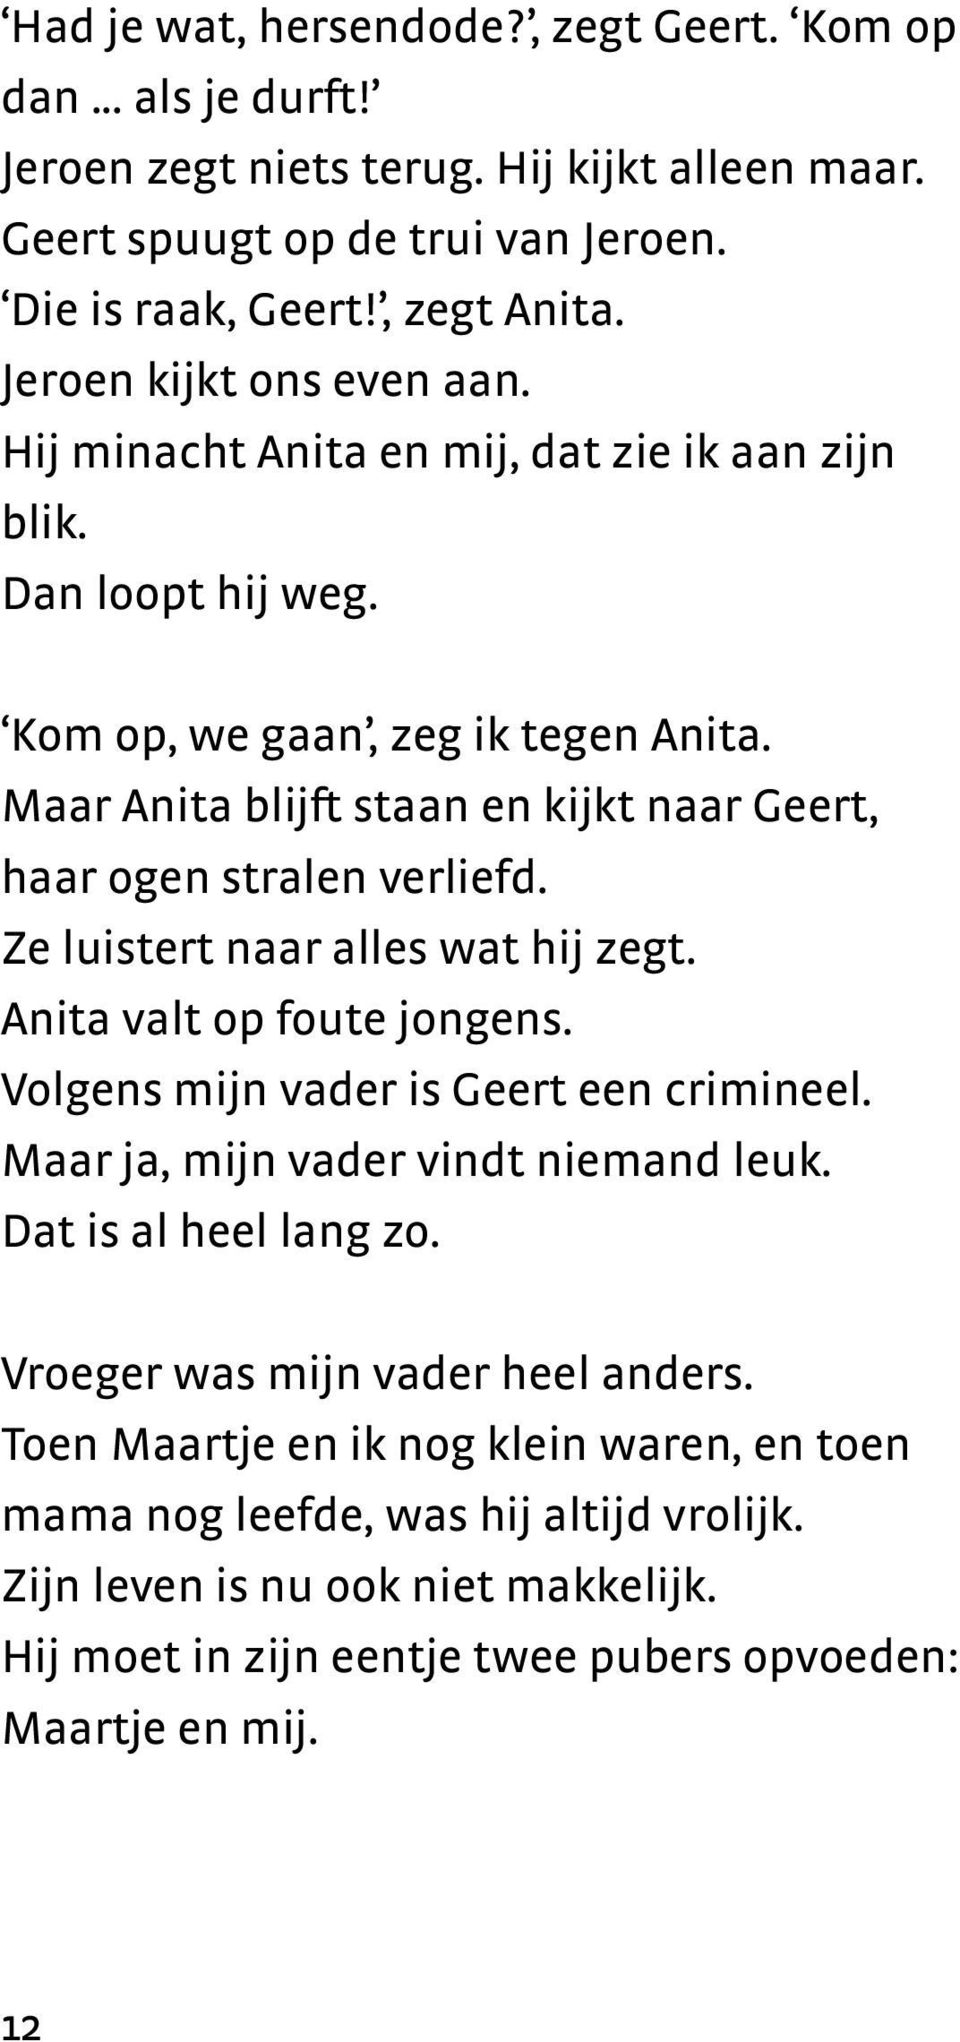 Maar Anita blijft staan en kijkt naar Geert, haar ogen stralen verliefd. Ze luistert naar alles wat hij zegt. Anita valt op foute jongens. Volgens mijn vader is Geert een crimineel.